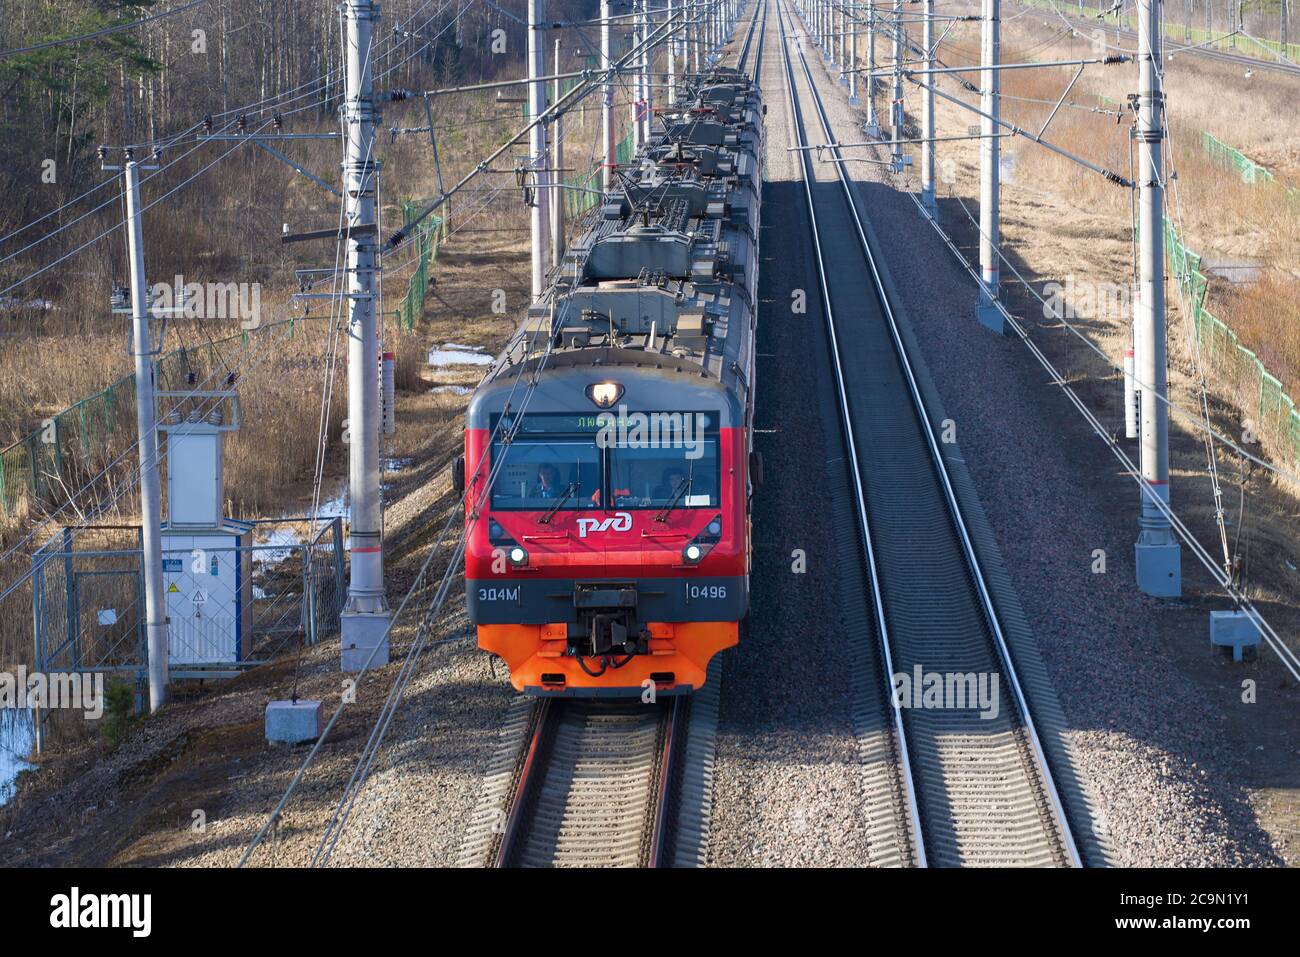 SAINT-PÉTERSBOURG, RUSSIE - 10 AVRIL 2018 : gros plan du train électrique de banlieue ED4M-0496 Banque D'Images